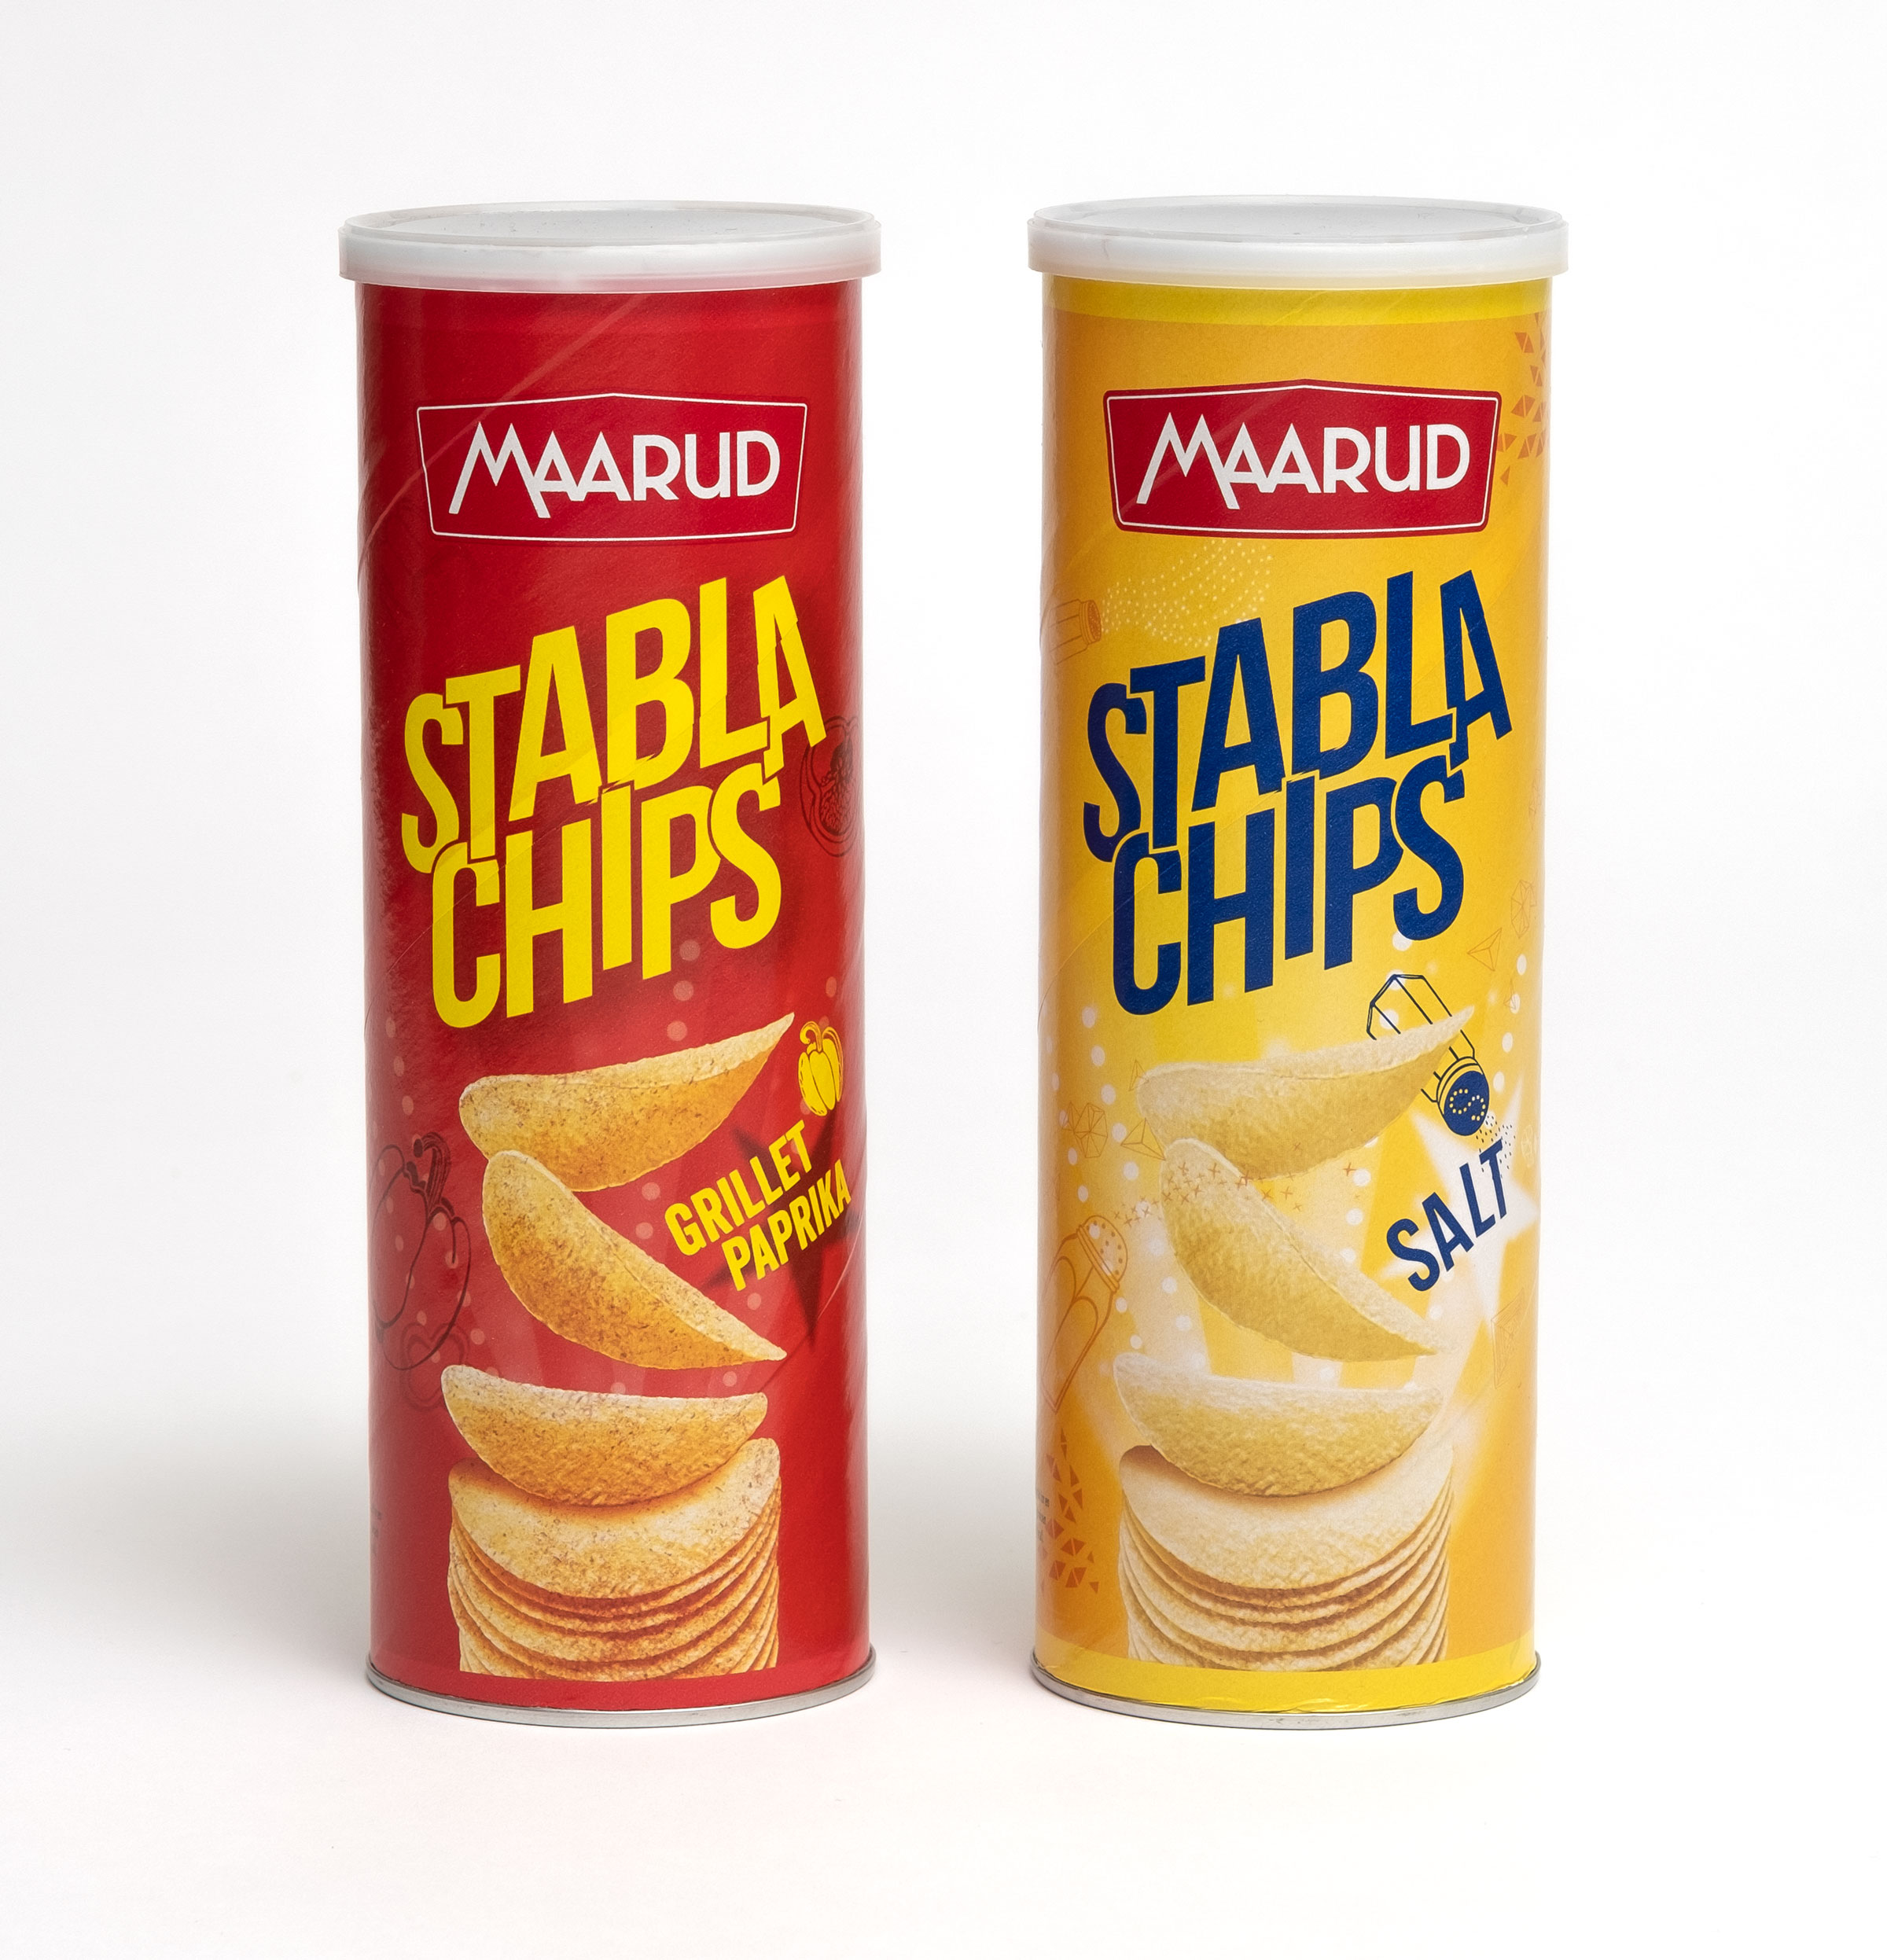 Stabla Chips Maarud